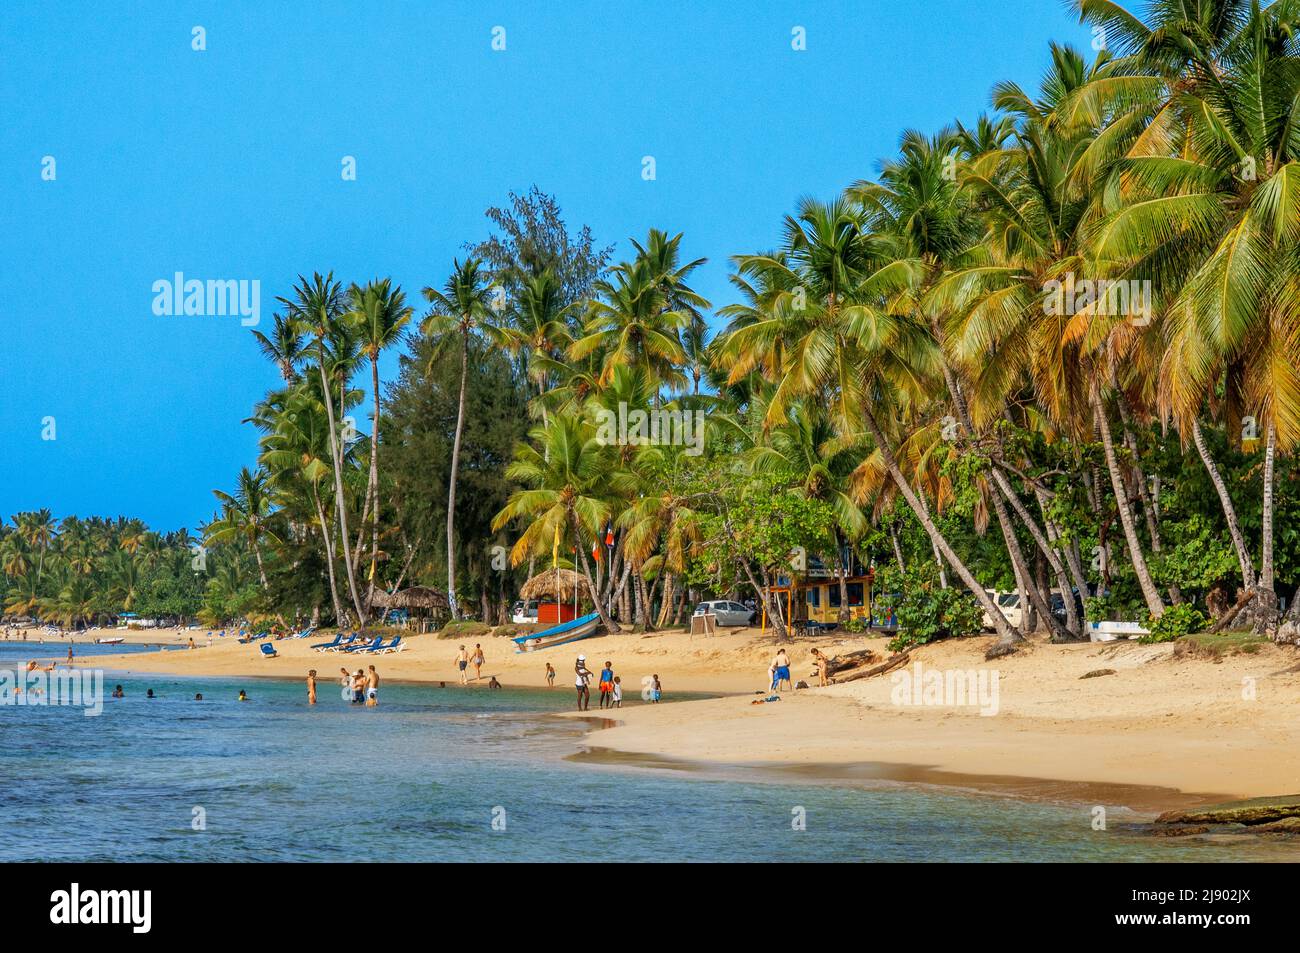 Playa Las Terrenas, Samaná, República Dominicana, Caribe, América. Playa tropical caribeña con palmeras de coco. Esta playa de arena blanca se extiende Foto de stock